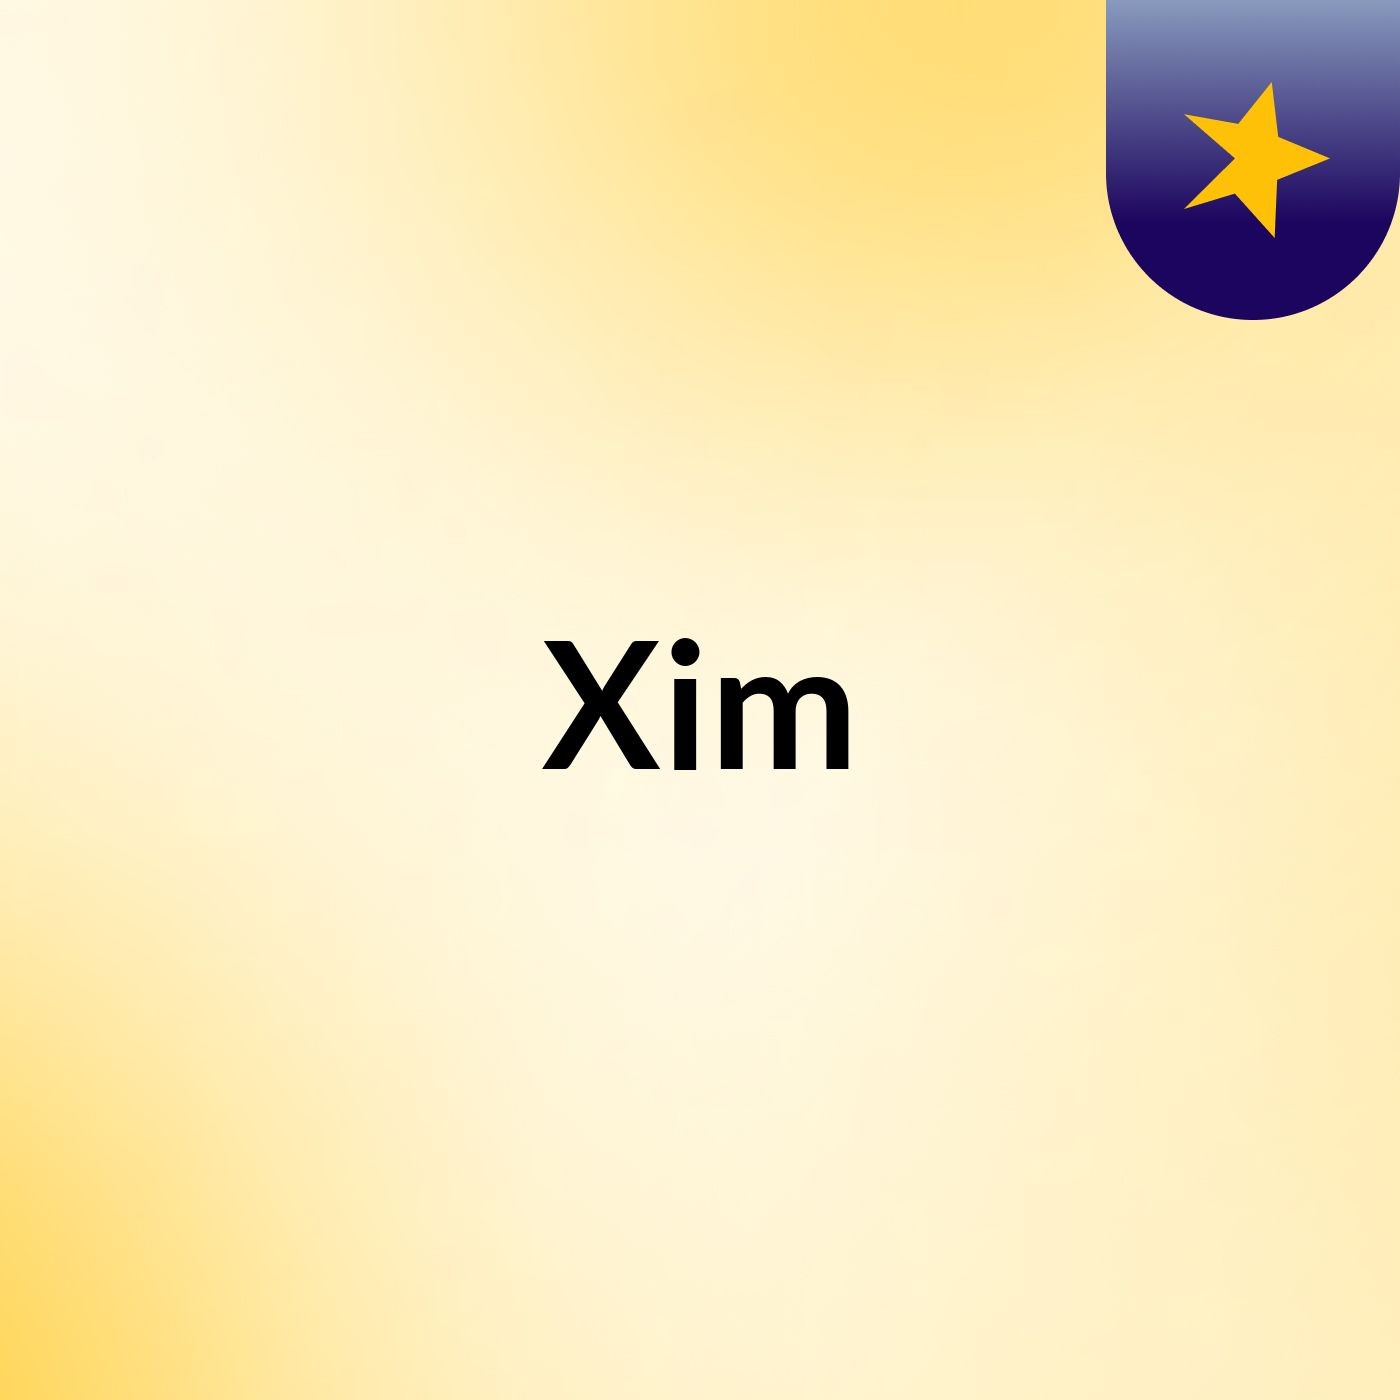 Xim